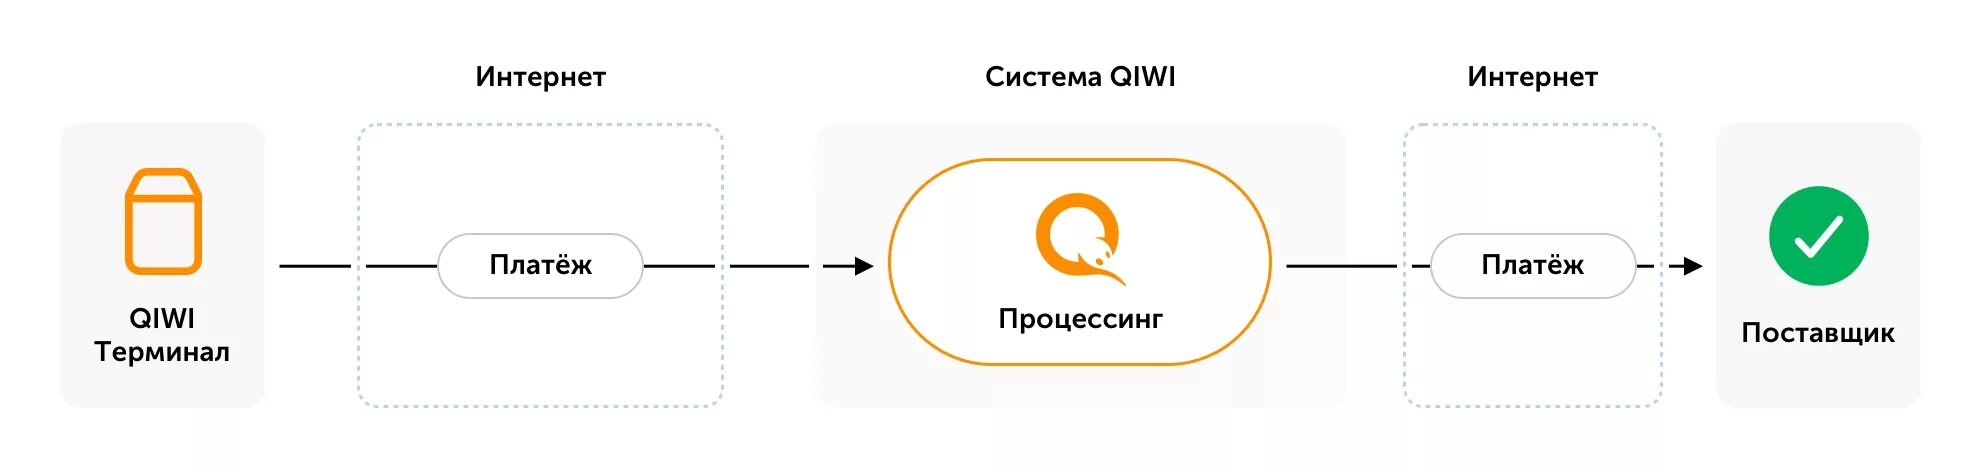 Киви приставы. Структура QIWI. Схема электронных платежей QIWI. Информационной системы QIWI. QIWI схемы оплаты.